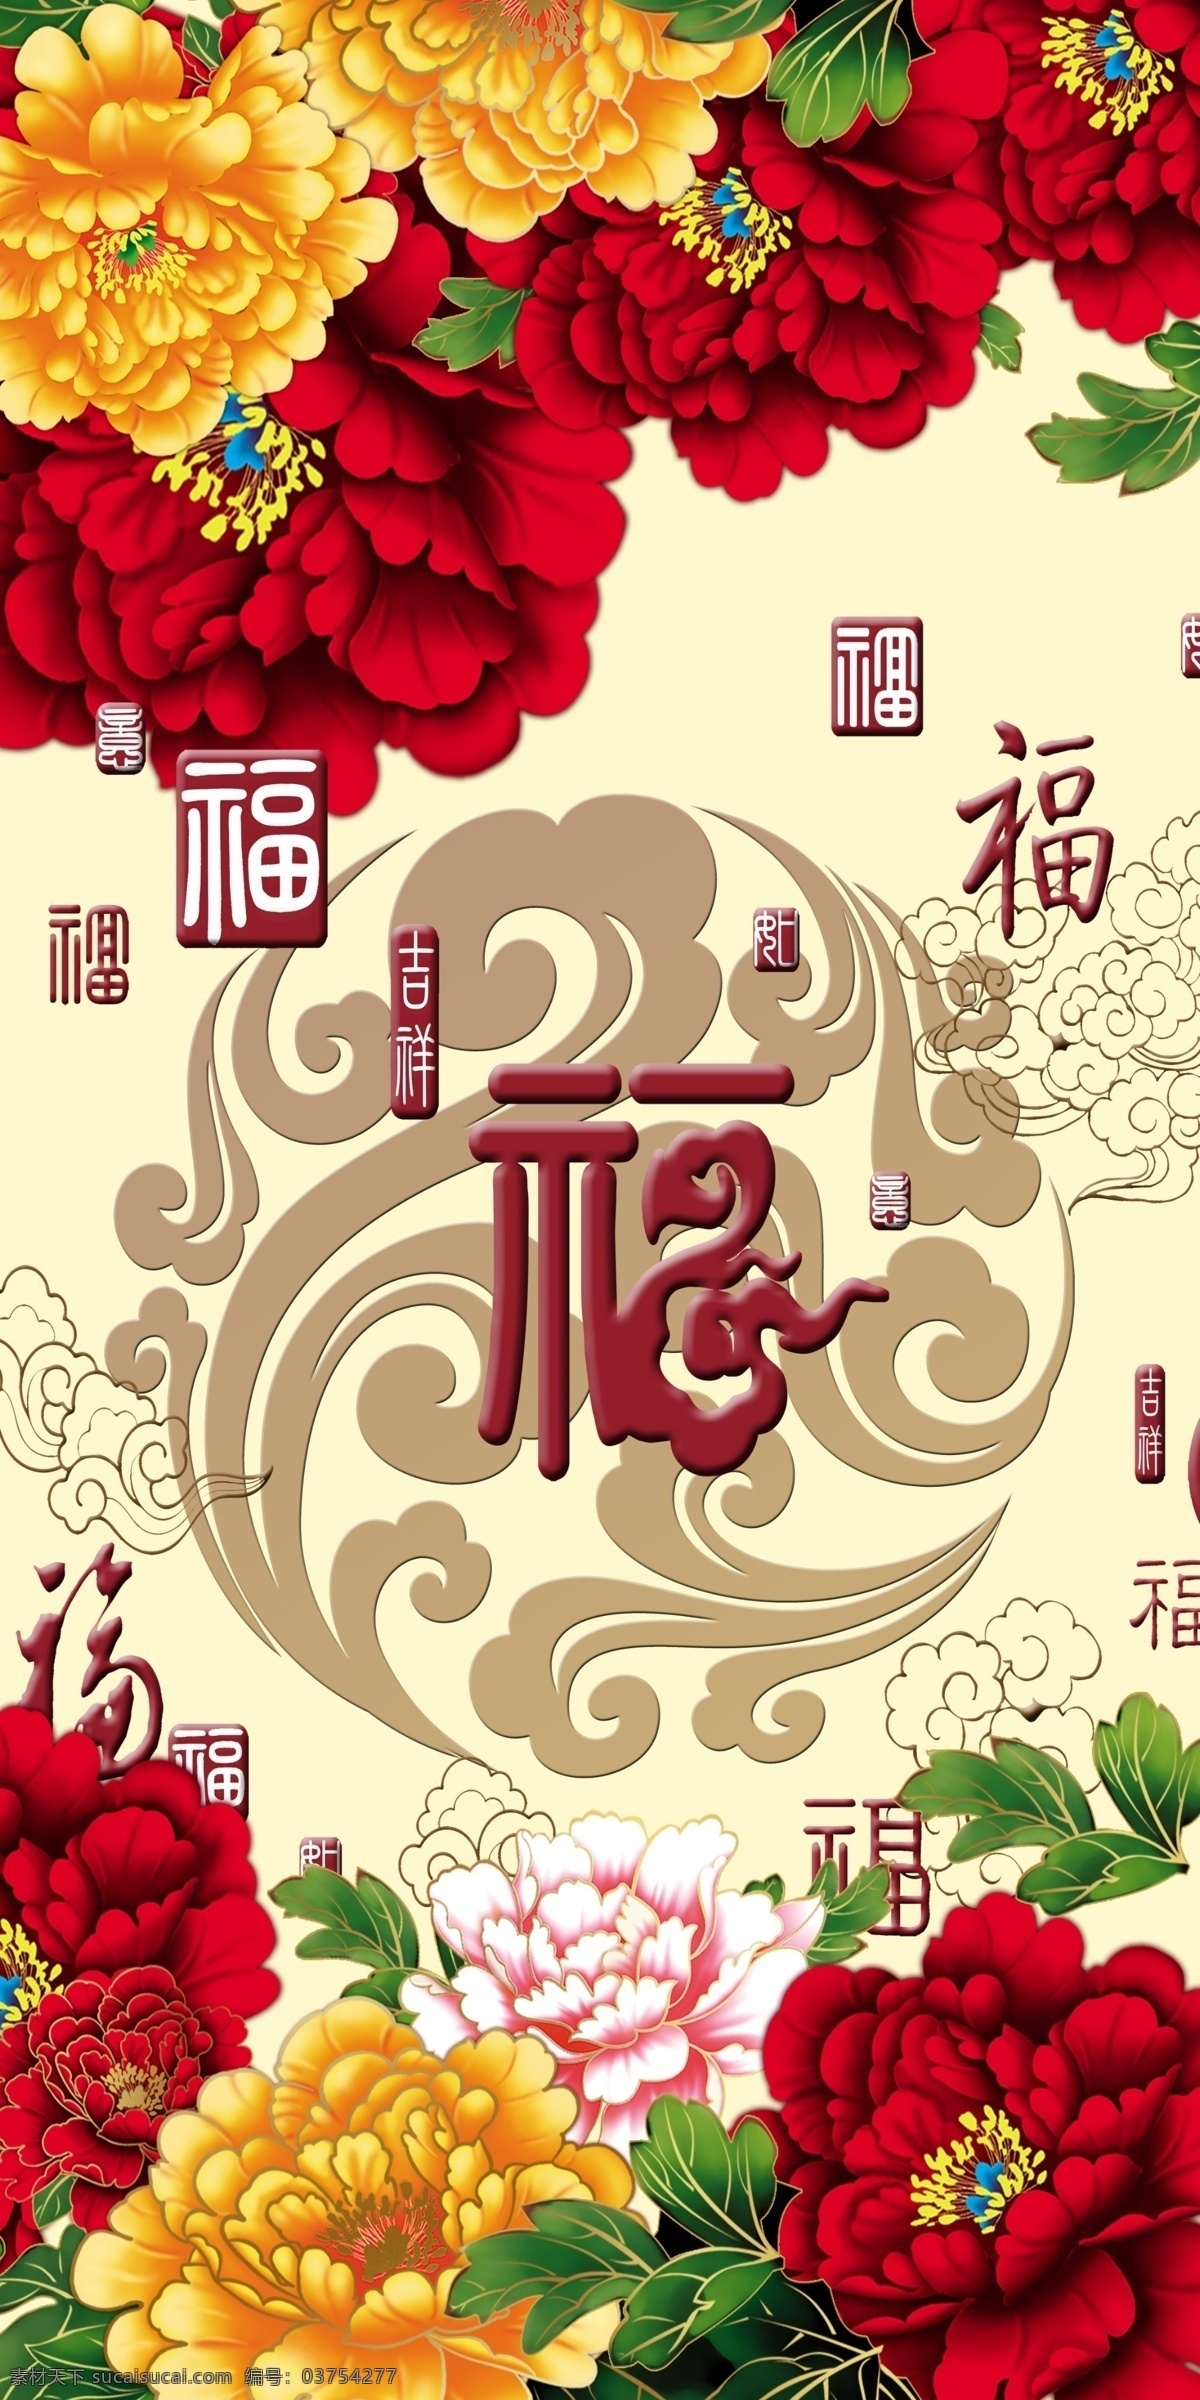 百福 牡丹 图 瓷砖 高清 背景 墙 中国风 中式 传统 经典 古典 背景墙 牡丹花 福字 电视背景墙 效果图